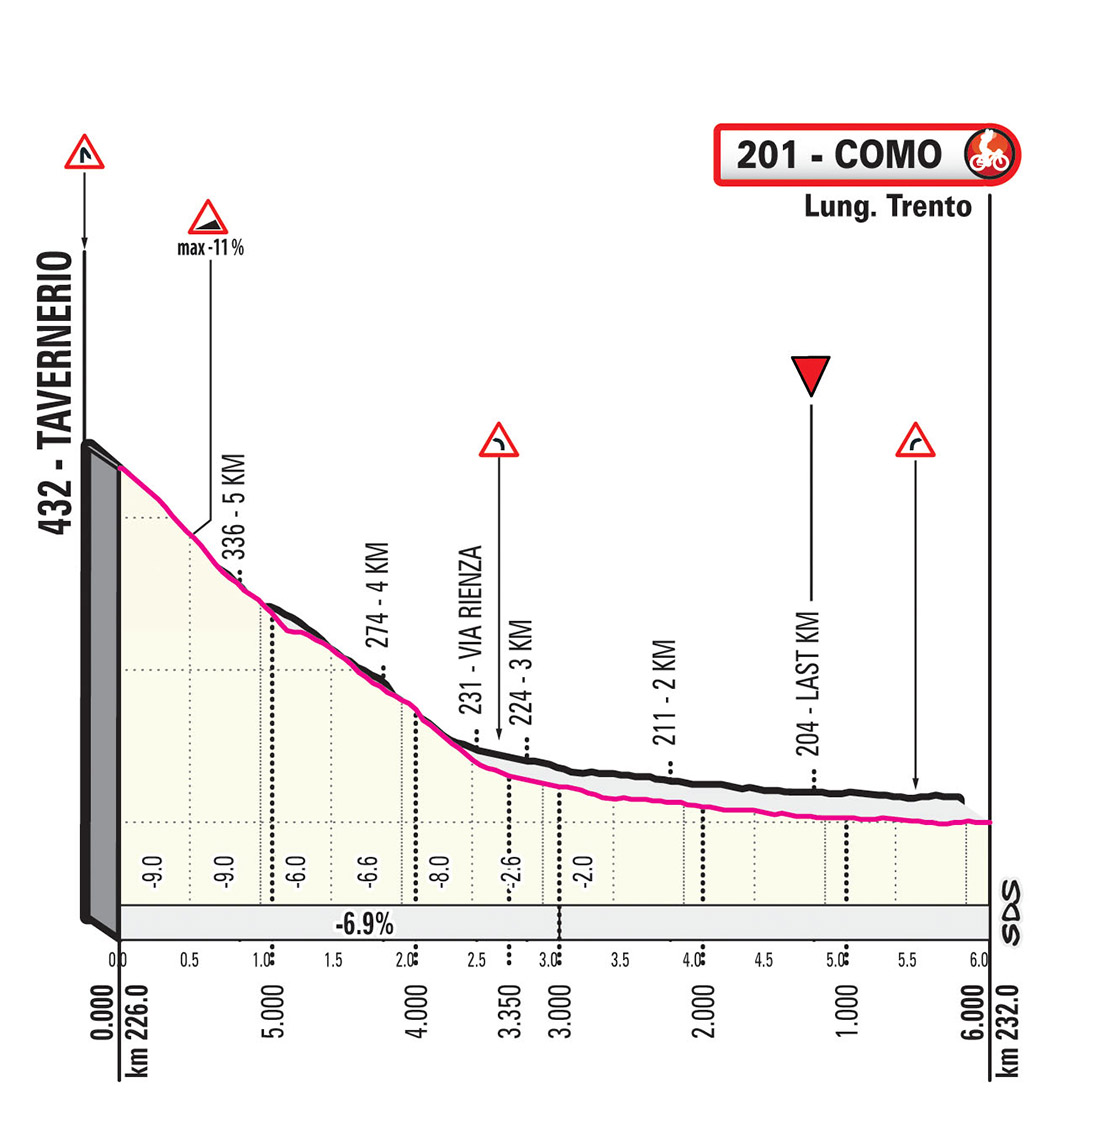 Giro-ditalia-2019-Tappa-15-ukm.jpg